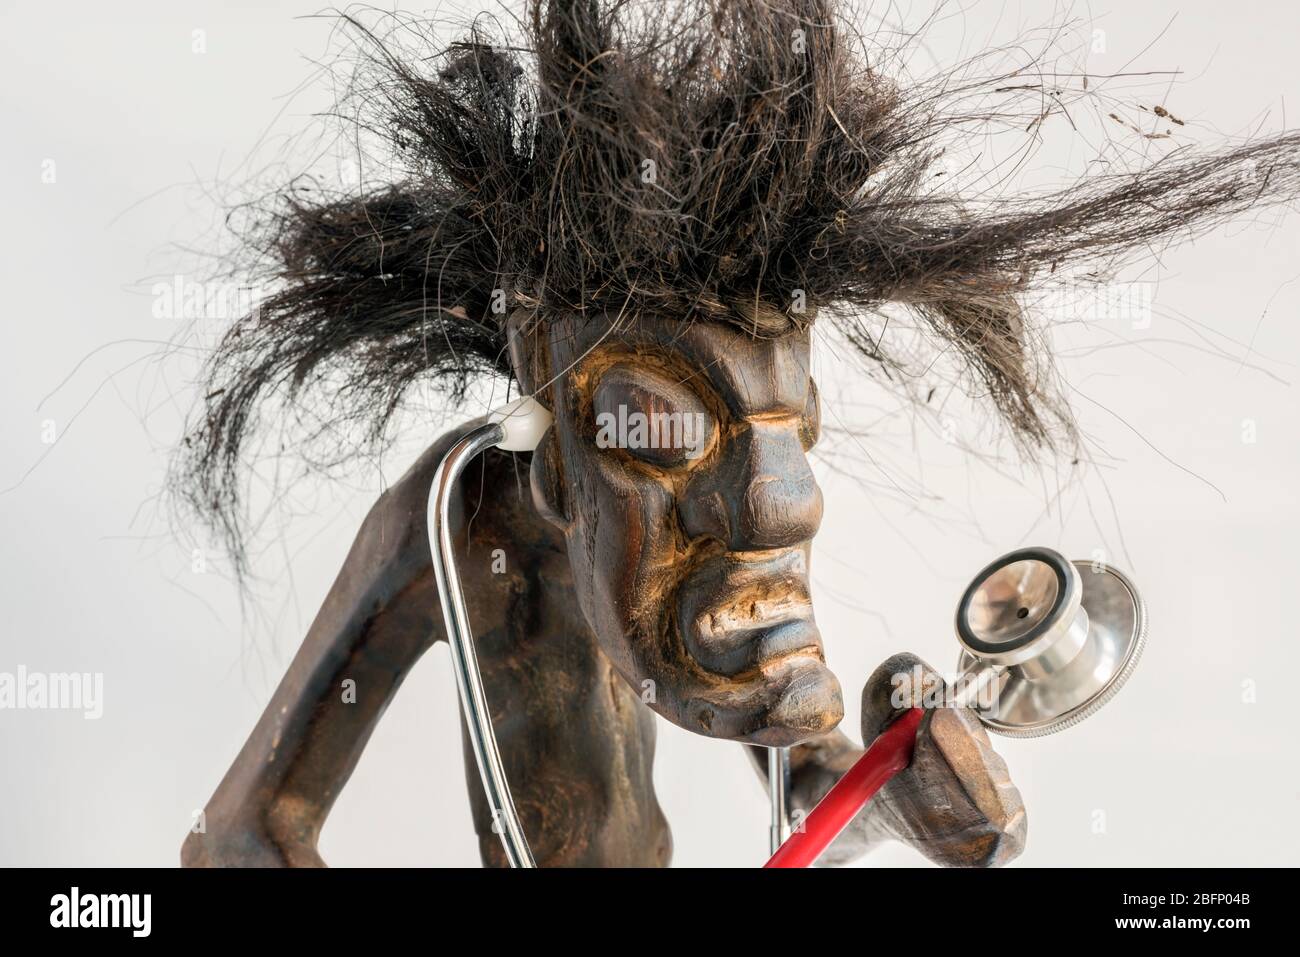 Figura intagliata in legno di uomo primitivo con gonna di paglia e lunghi capelli neri a forma di tussia, con stetoscopio. Concetto; aspirazione, ambizione, mobilità sociale. Foto Stock